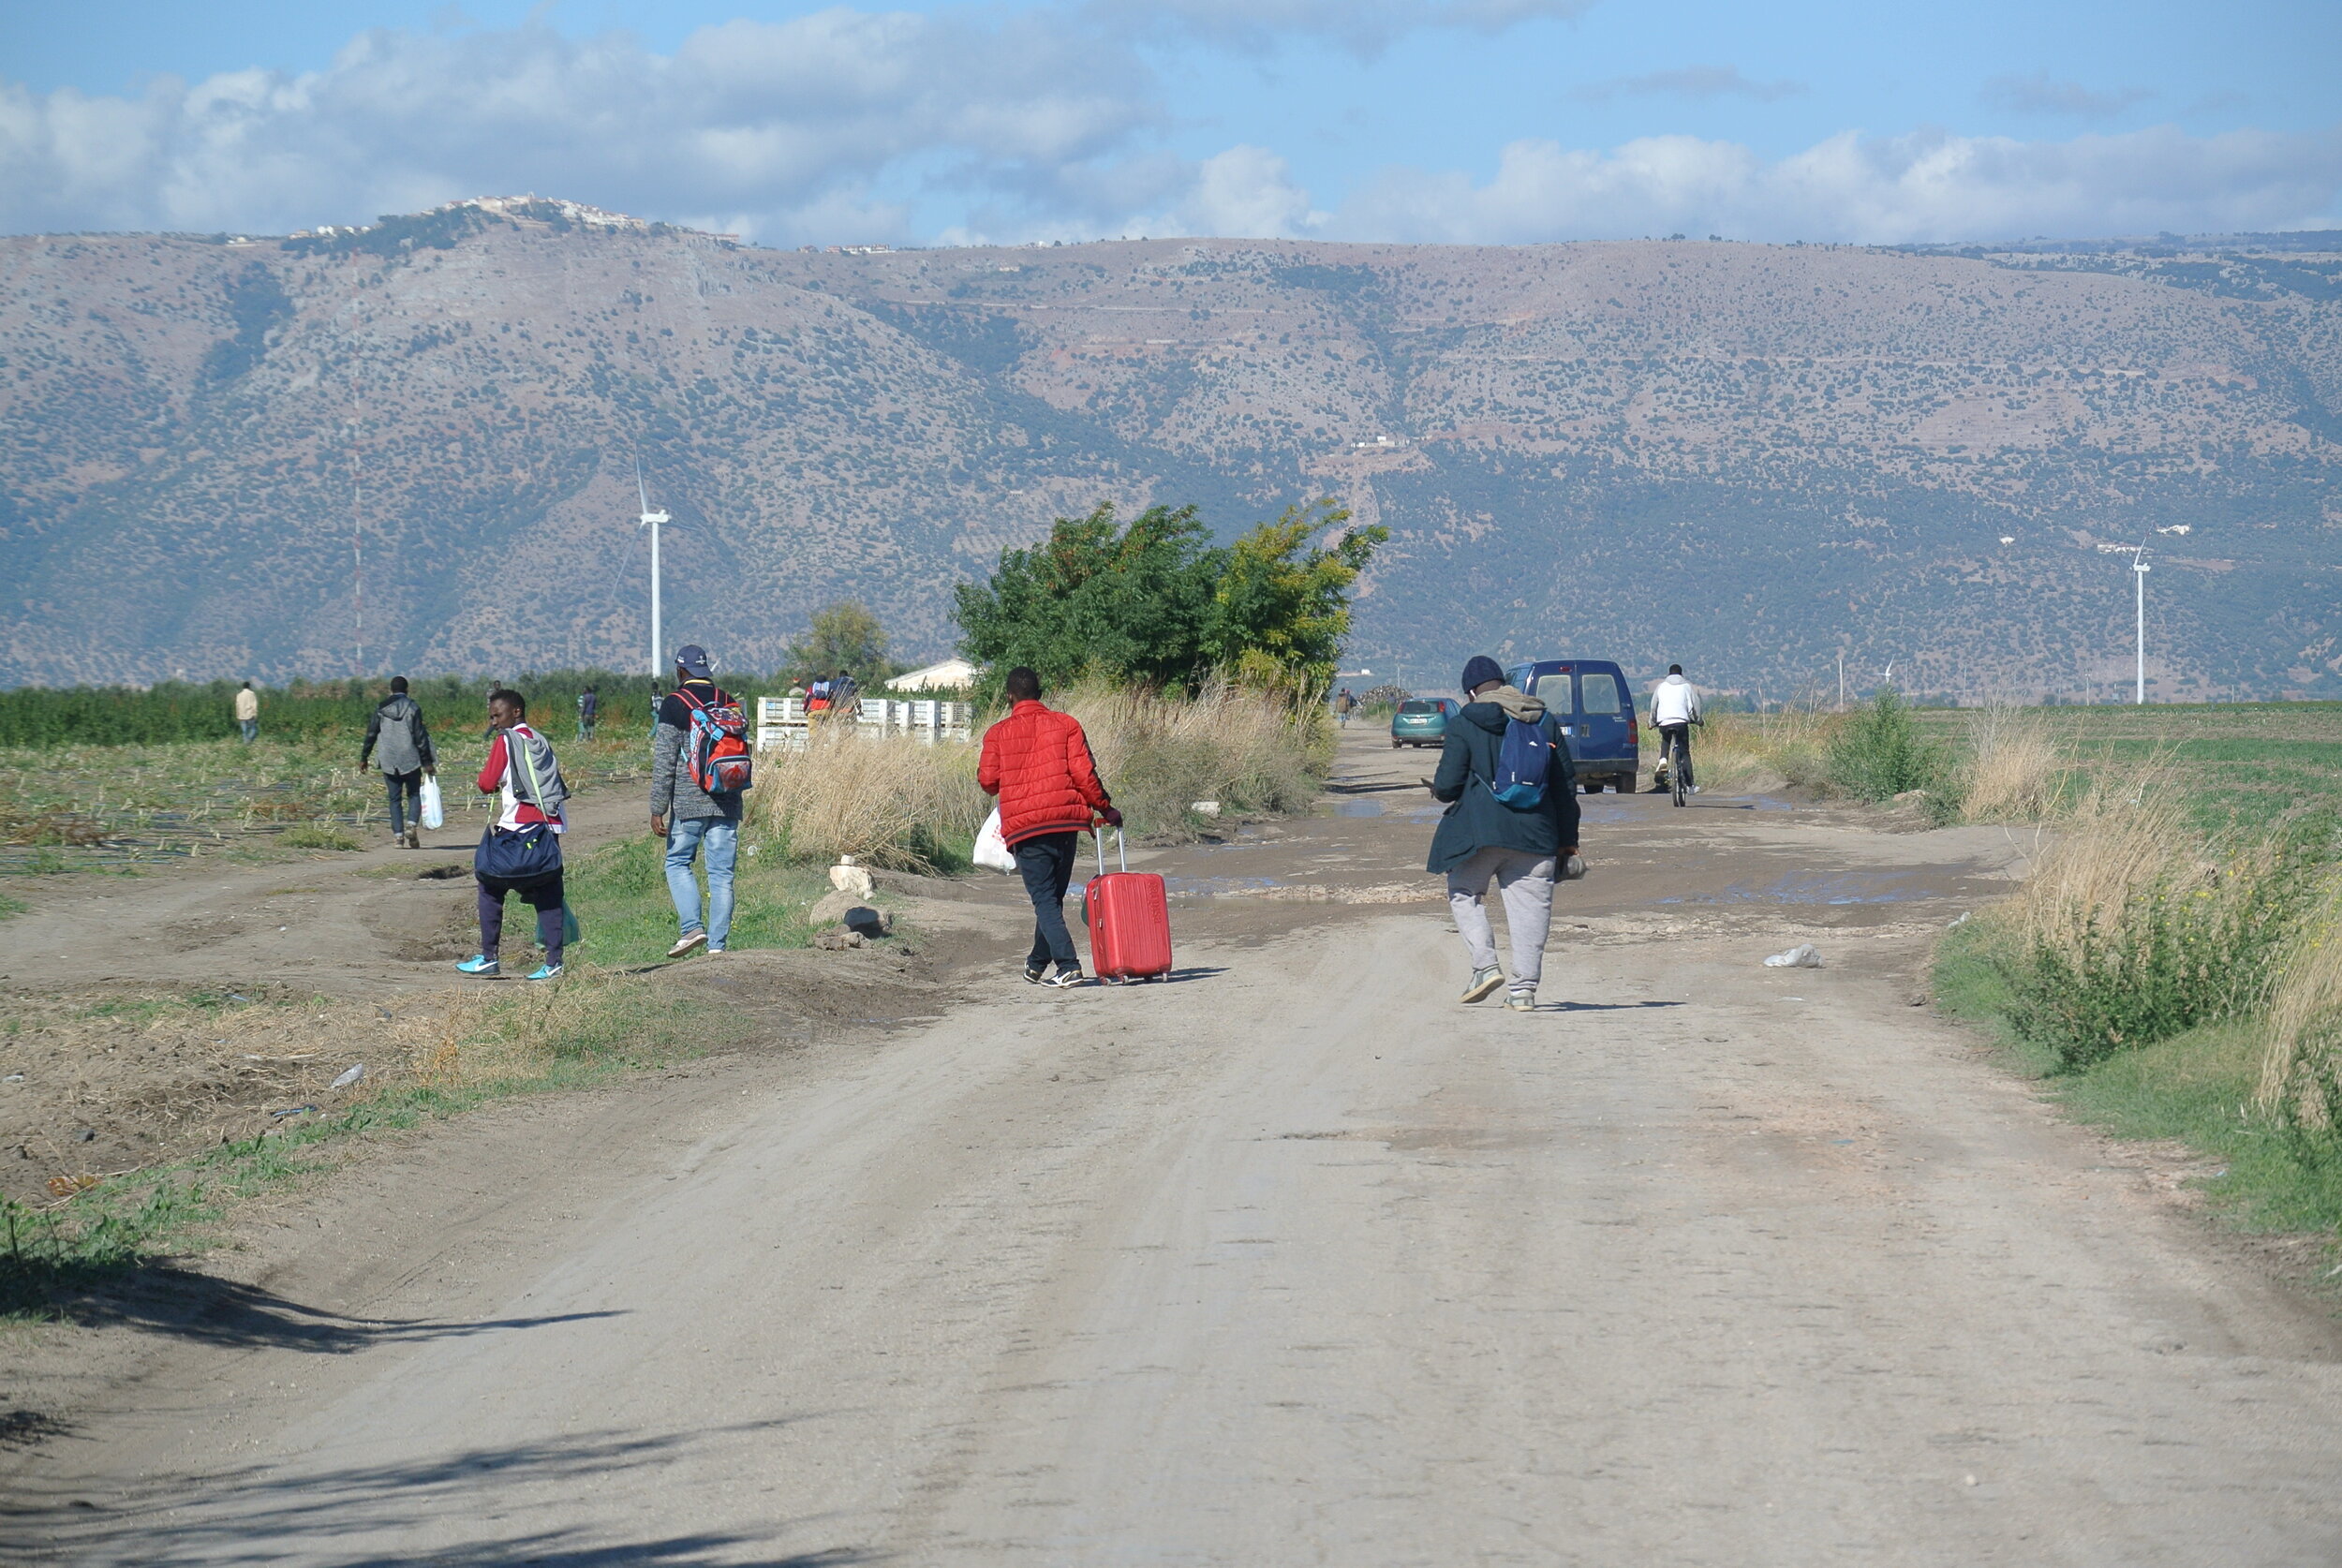   Migranti senzatetto si dirigono verso il Gran Ghetto. Foggia. 8 ottobre 2019. ©Pamela Kerpius  